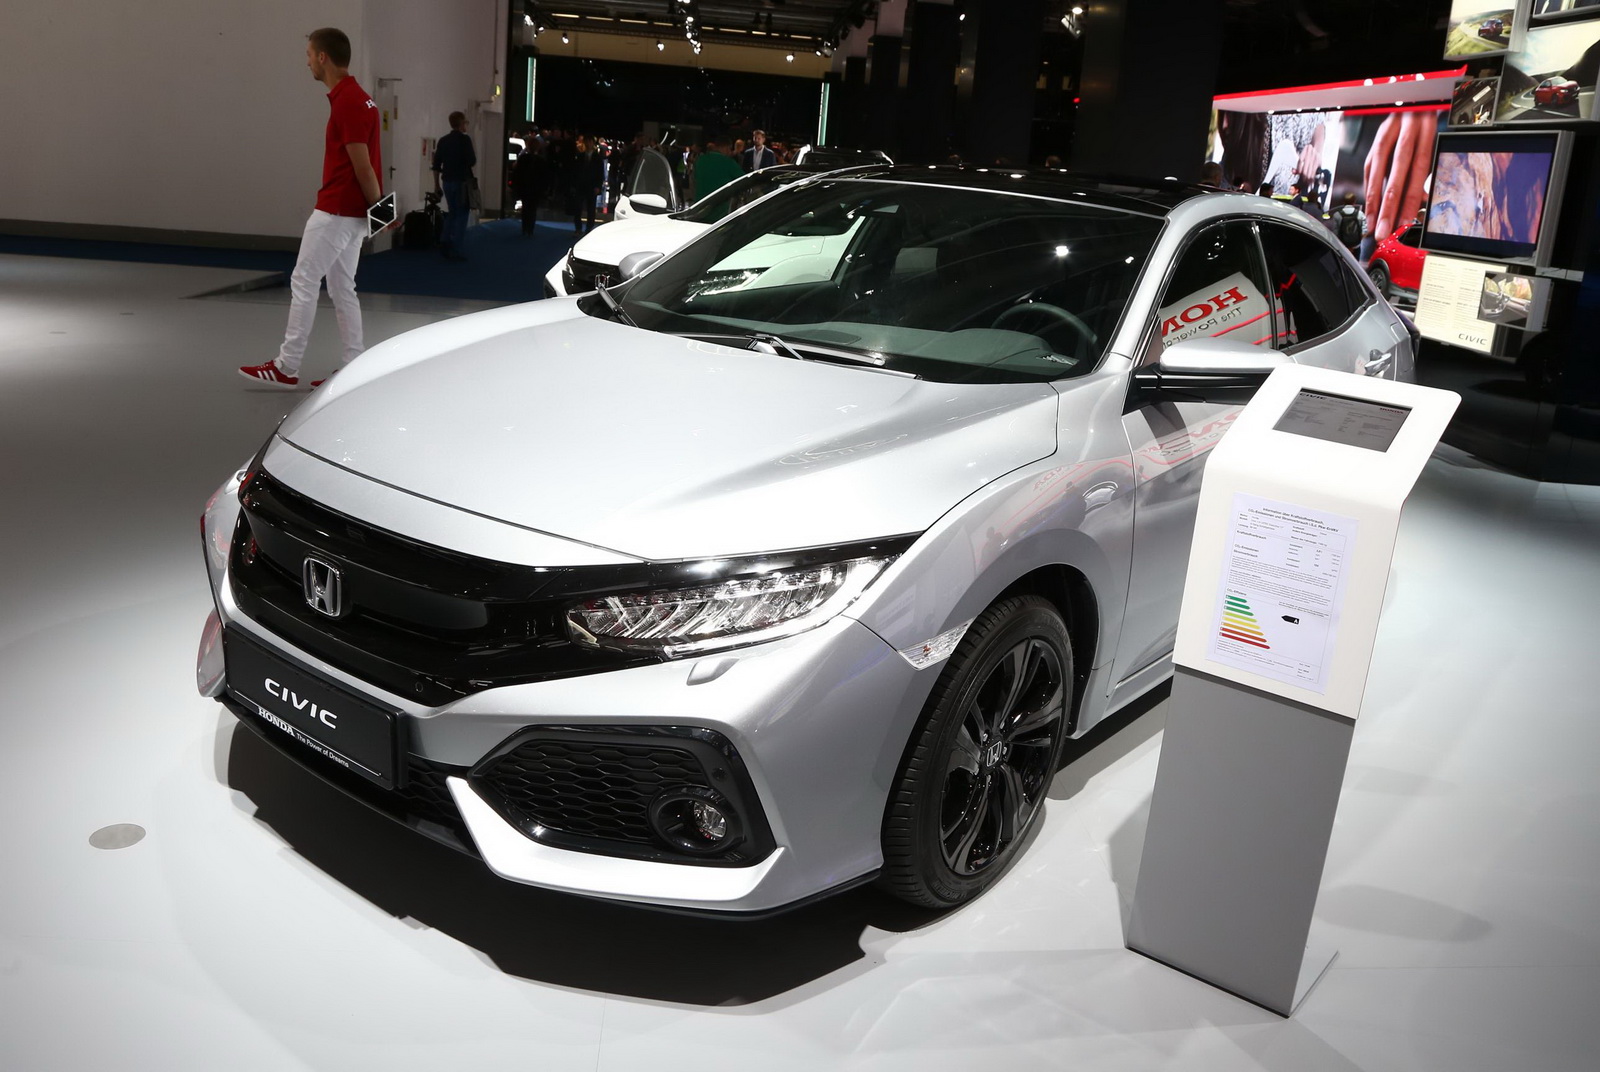 Ra mắt Honda Civic chạy dầu siêu tiết kiệm nhiên liệu. Honda vừa ra mắt Civic sử dụng động cơ diesel tại triển lãm ô tô Frankfurt với mức tiêu thụ nhiên liệu ấn tượng. (CHI TIẾT)